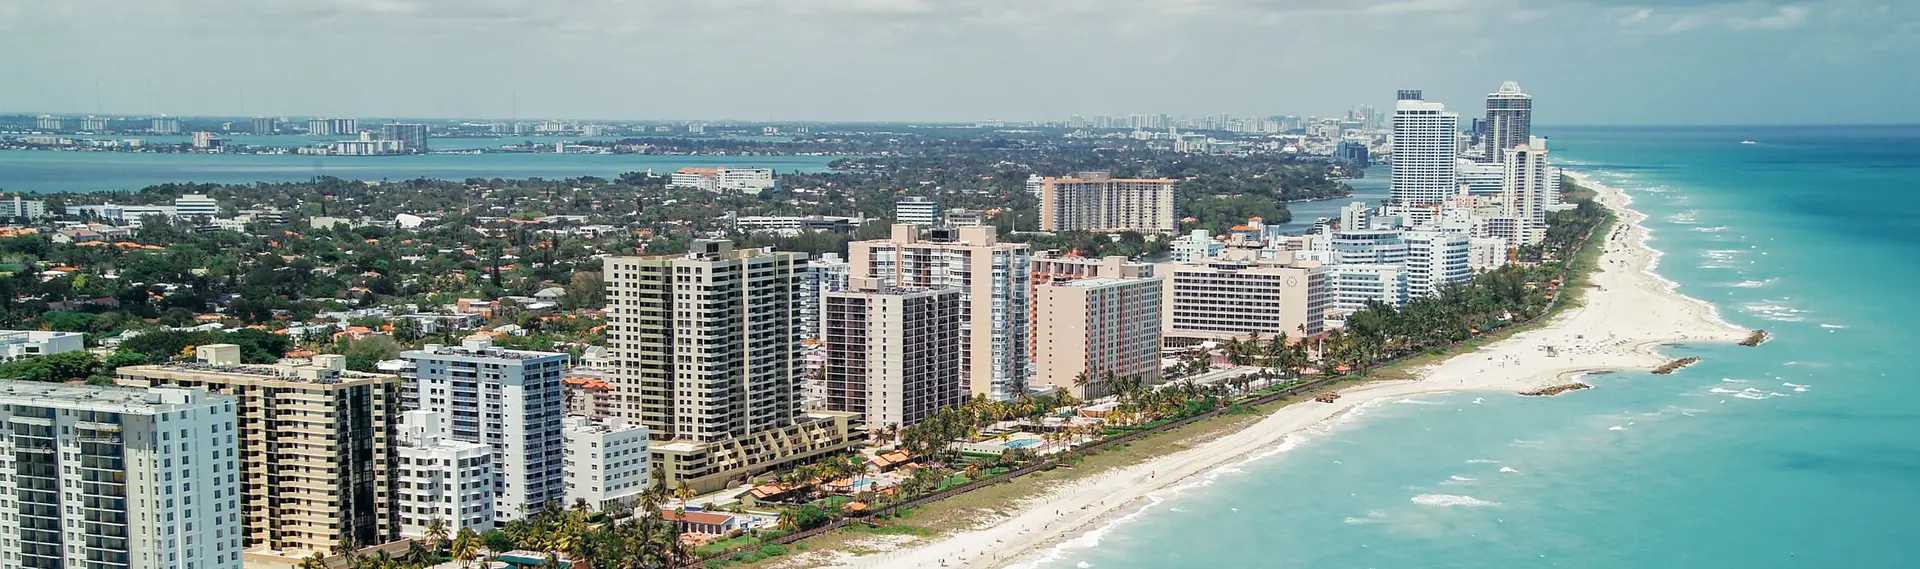 邁阿密 Miami Beach